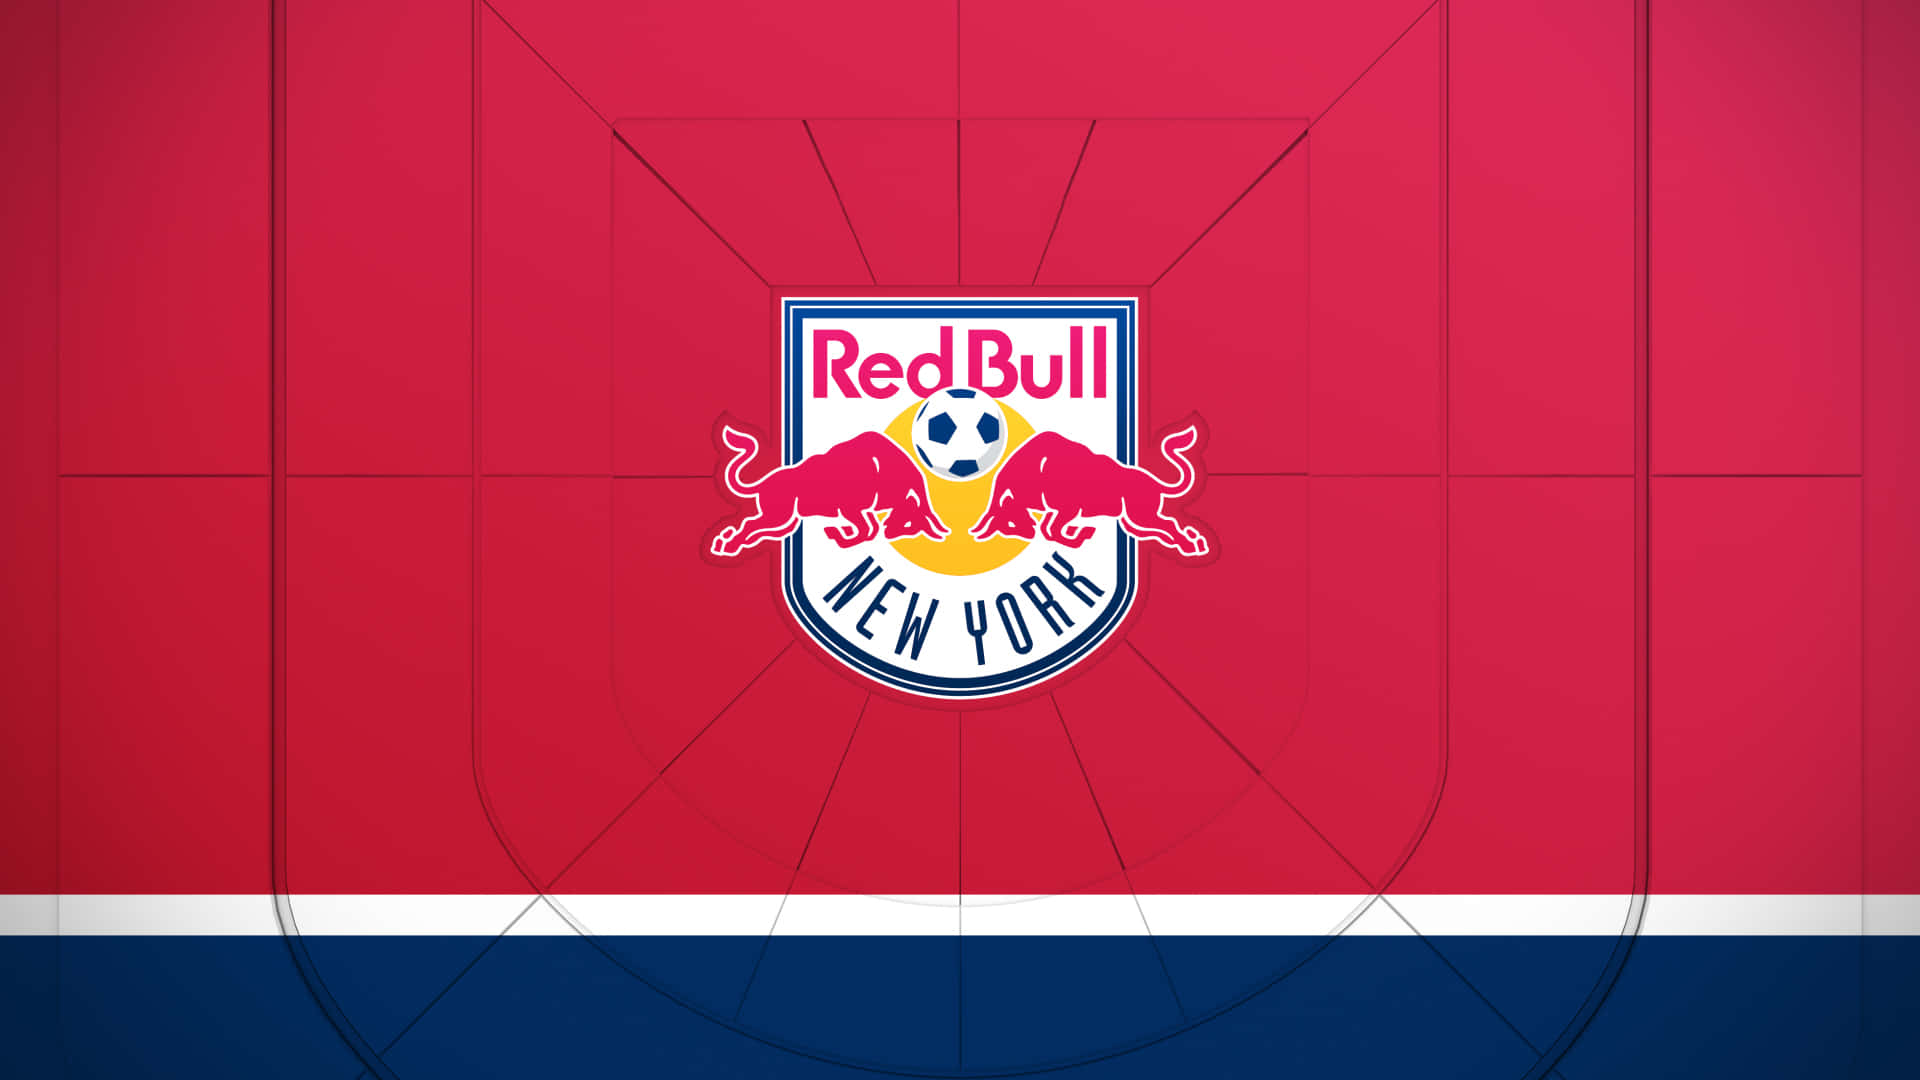 Enjoy the Power of Red Bull